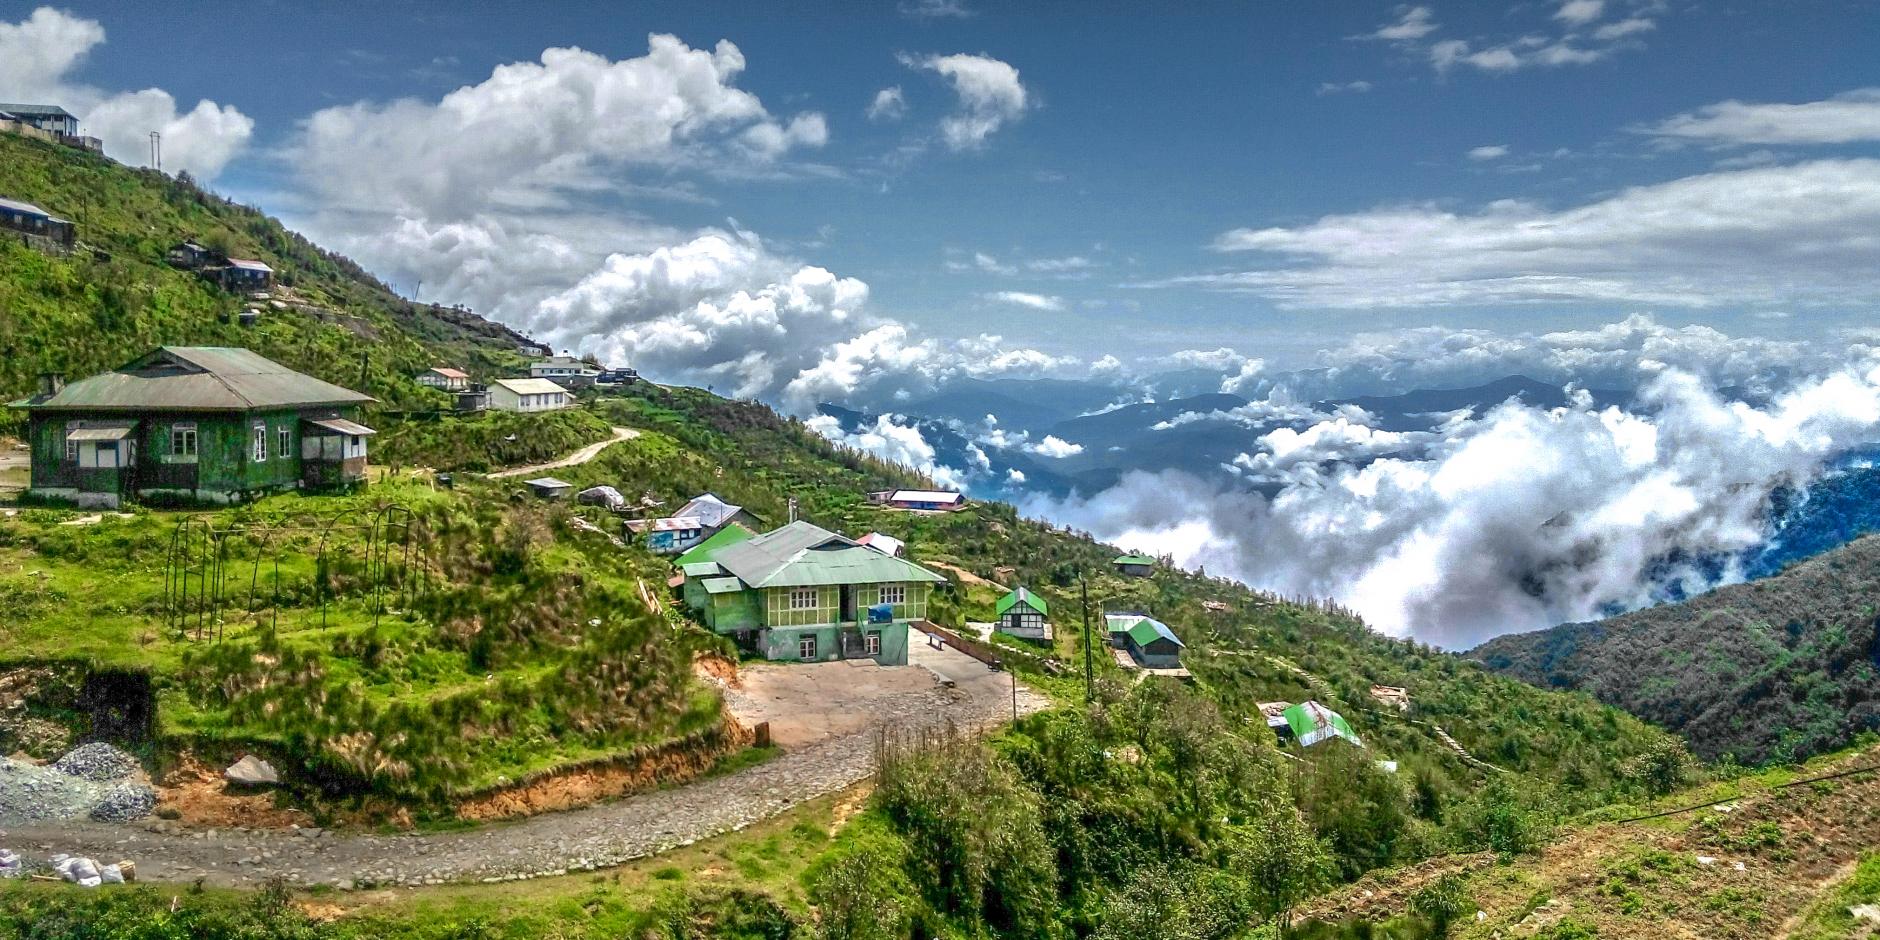 El estado de Sikkim en la India prohíbe los agrotóxicos, La vida silvestre, los cultivos y el turismo florecen.